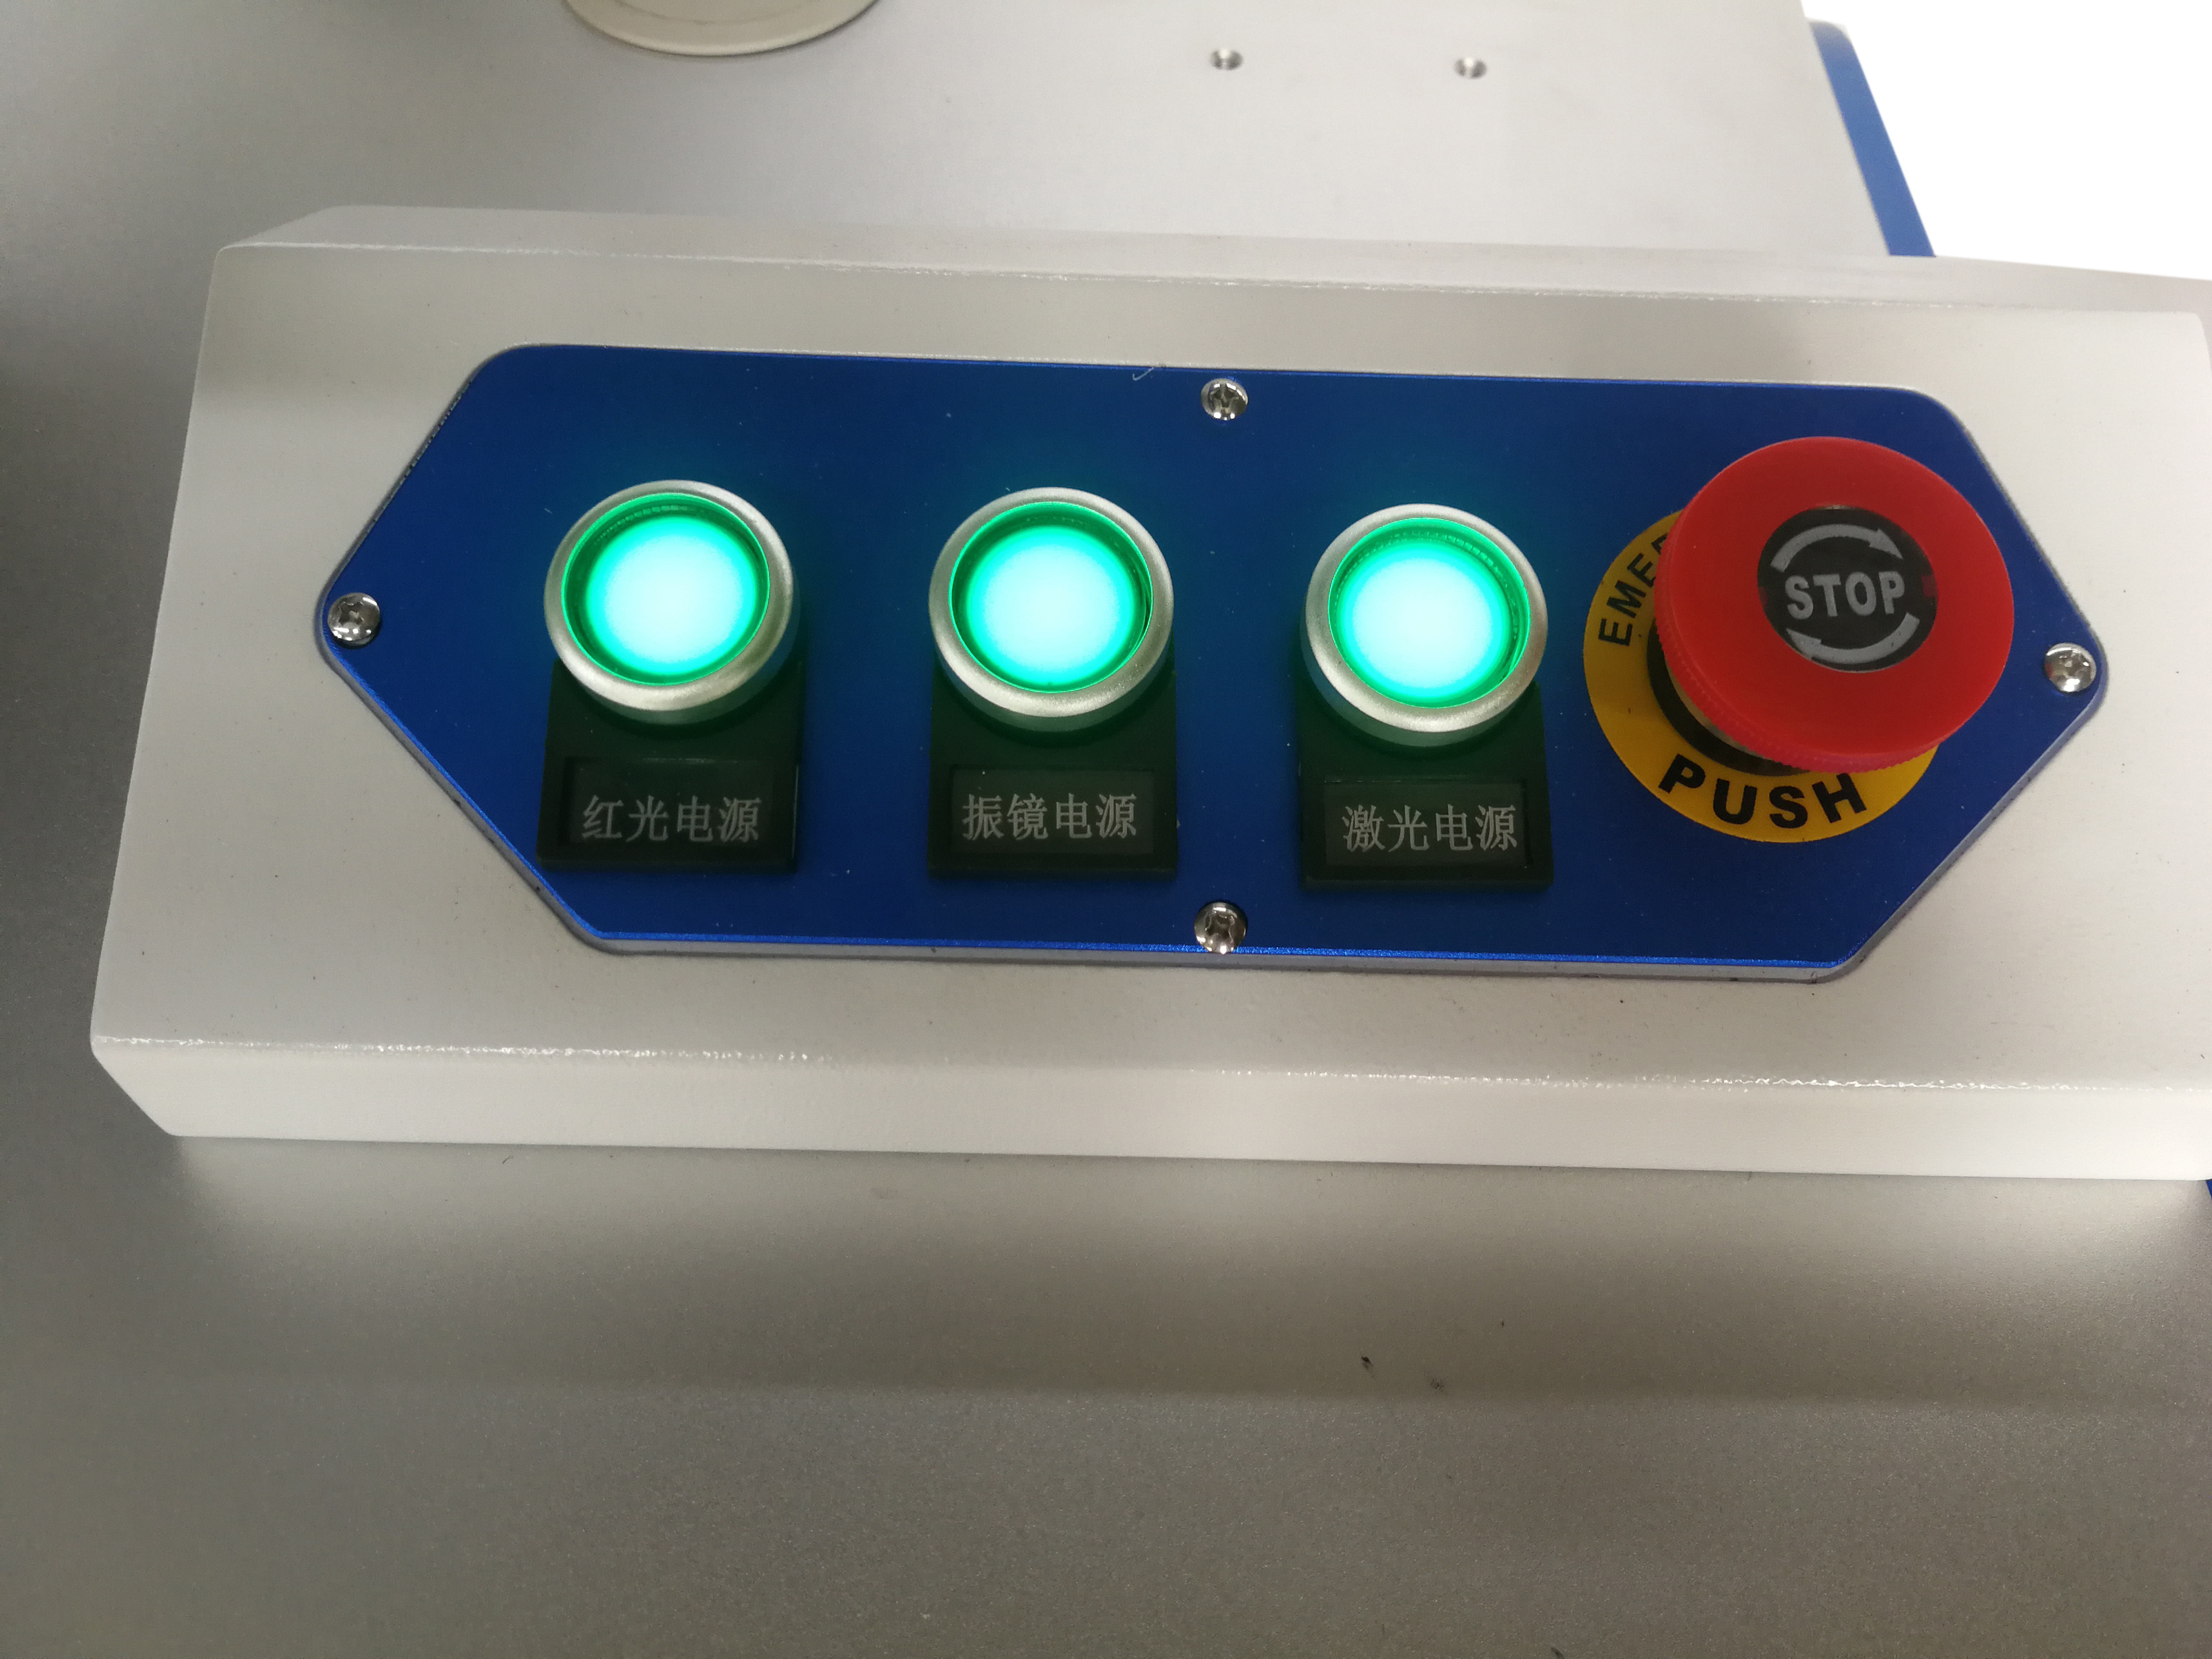  3W Ultraviolet fiber laser marking machine for glass